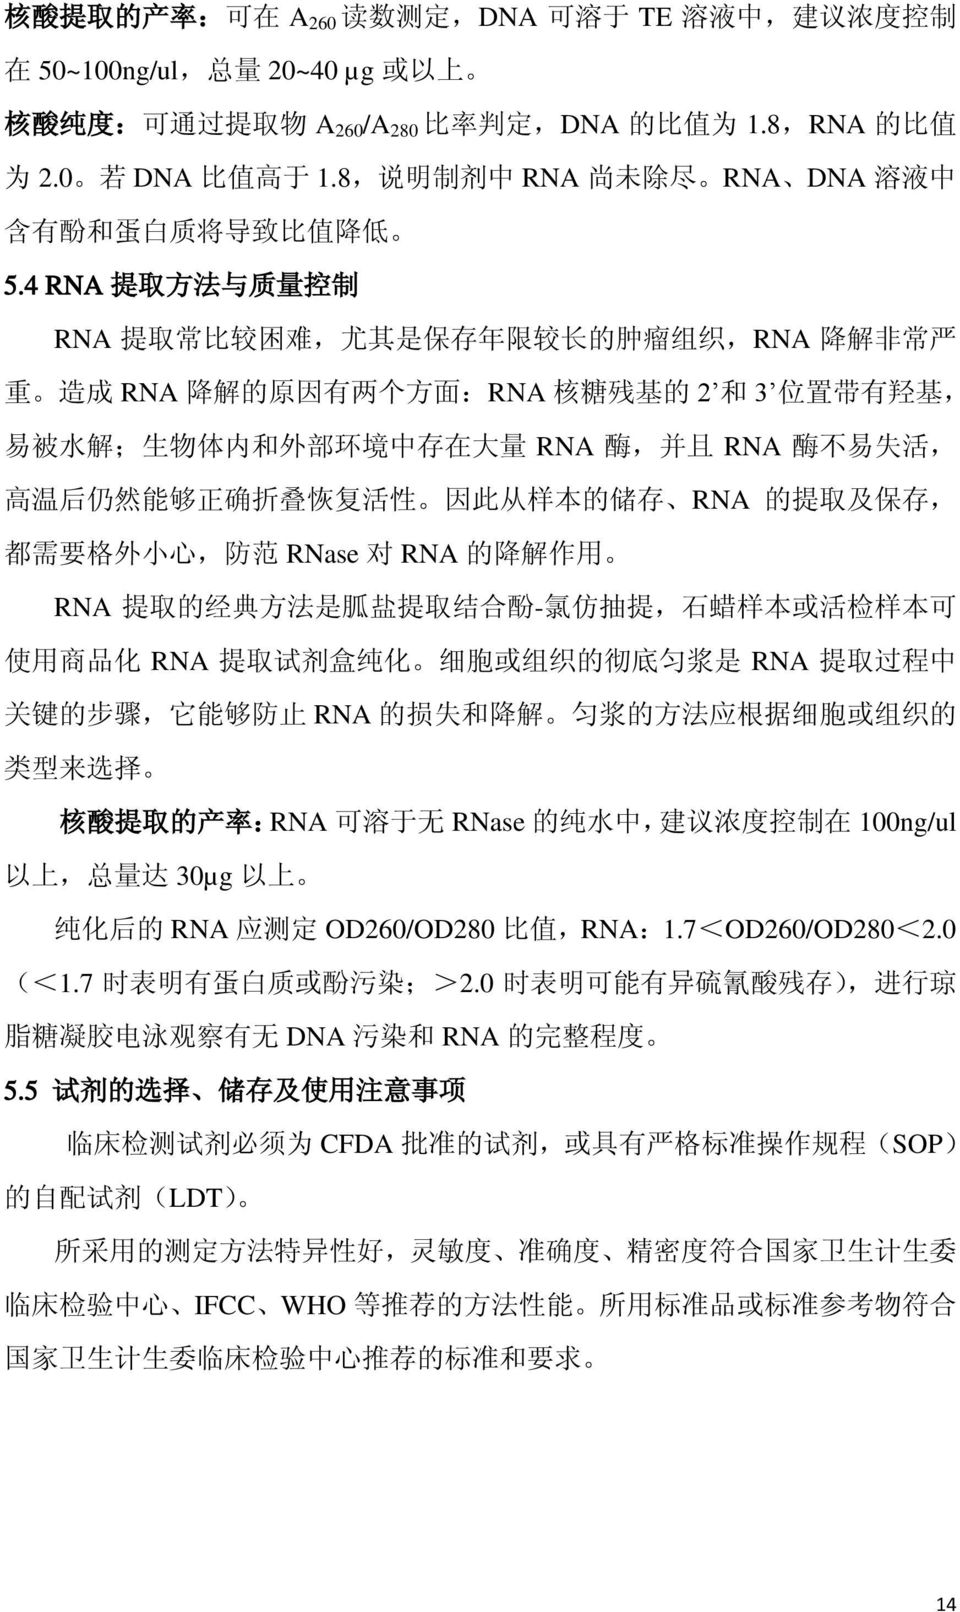 4 RNA 提 取 方 法 与 质 量 控 制 RNA 提 取 常 比 较 困 难, 尤 其 是 保 存 年 限 较 长 的 肿 瘤 组 织,RNA 降 解 非 常 严 重 造 成 RNA 降 解 的 原 因 有 两 个 方 面 :RNA 核 糖 残 基 的 2 和 3 位 置 带 有 羟 基, 易 被 水 解 ; 生 物 体 内 和 外 部 环 境 中 存 在 大 量 RNA 酶, 并 且